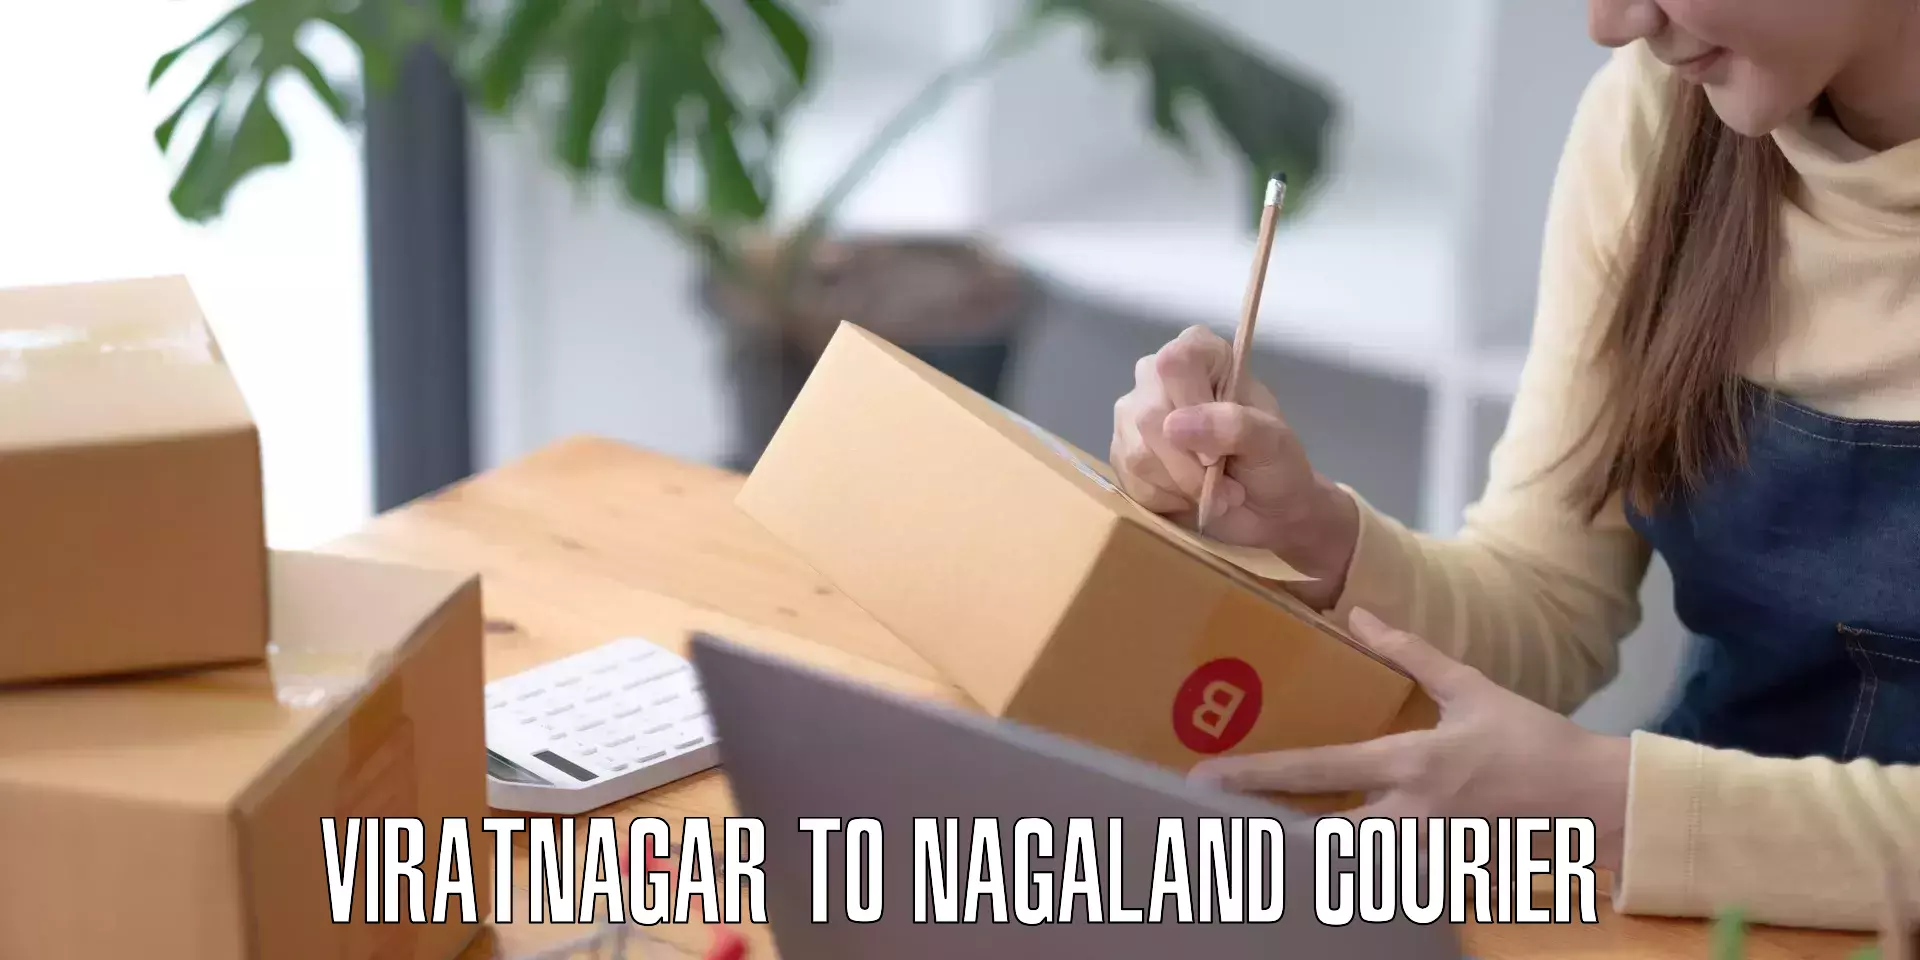 Baggage transport quote Viratnagar to Nagaland